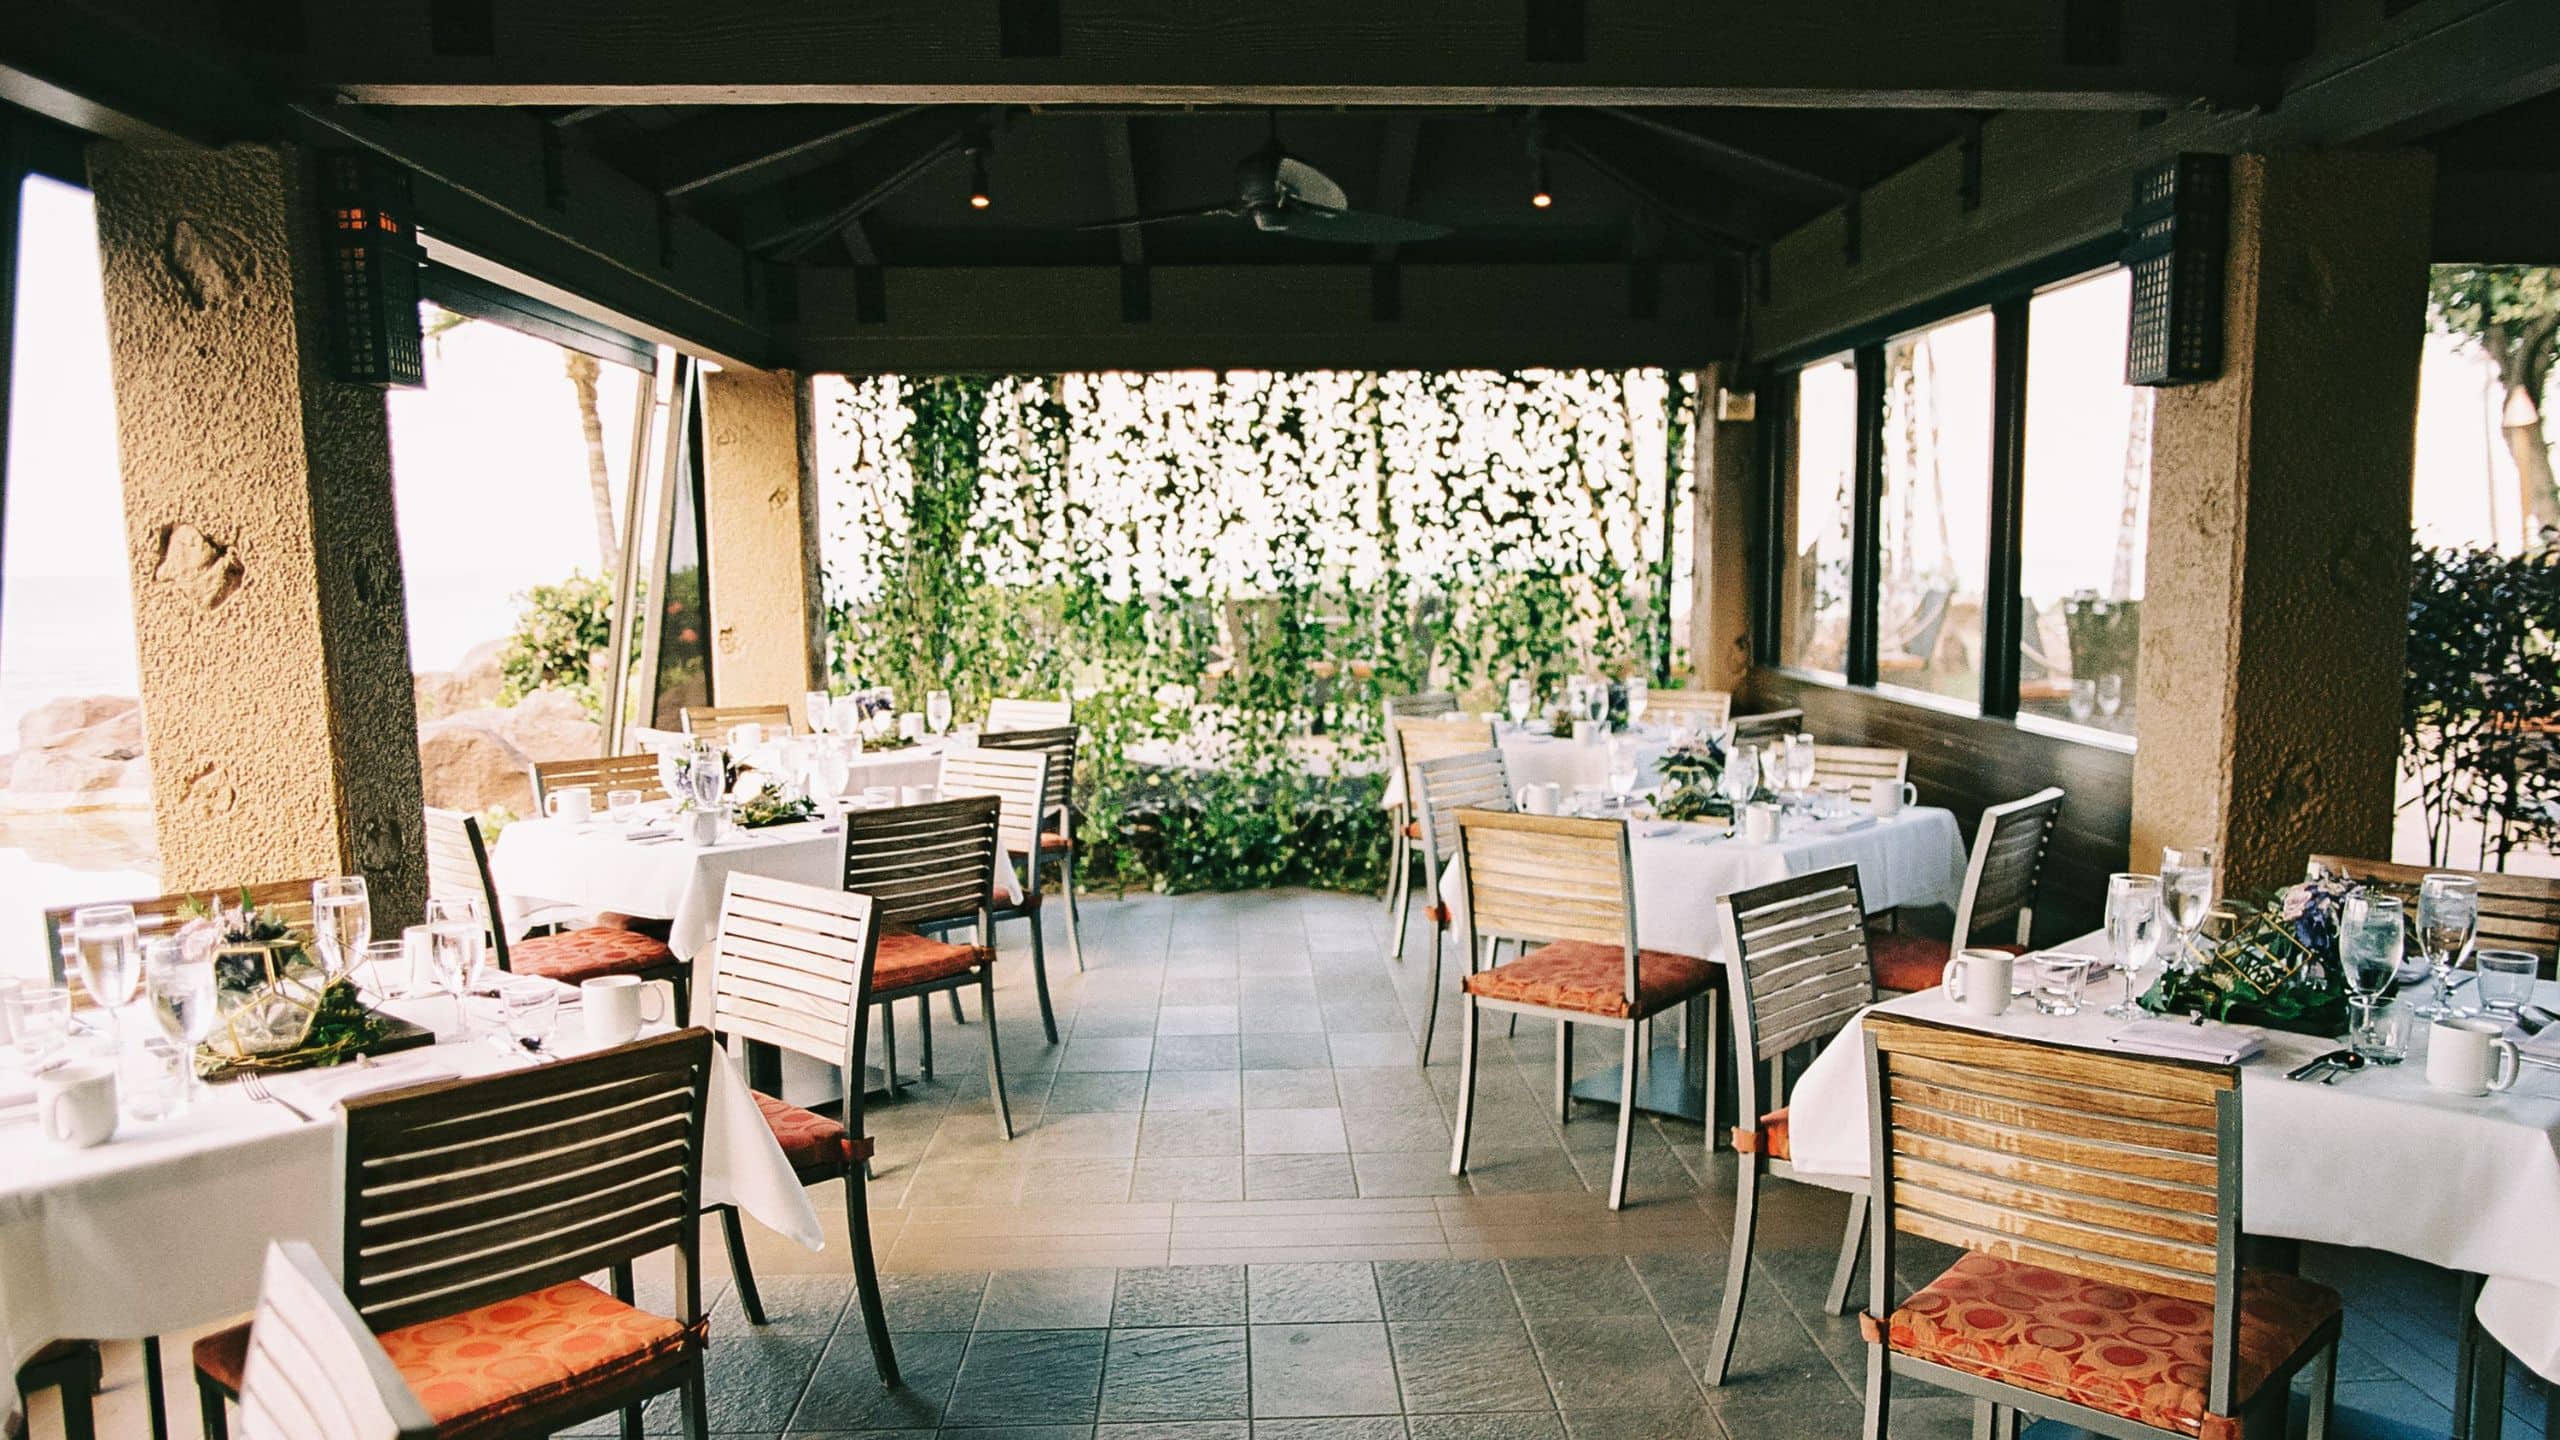 Covered outdoor dining venue at Hyatt Regency Maui Resort and Spa